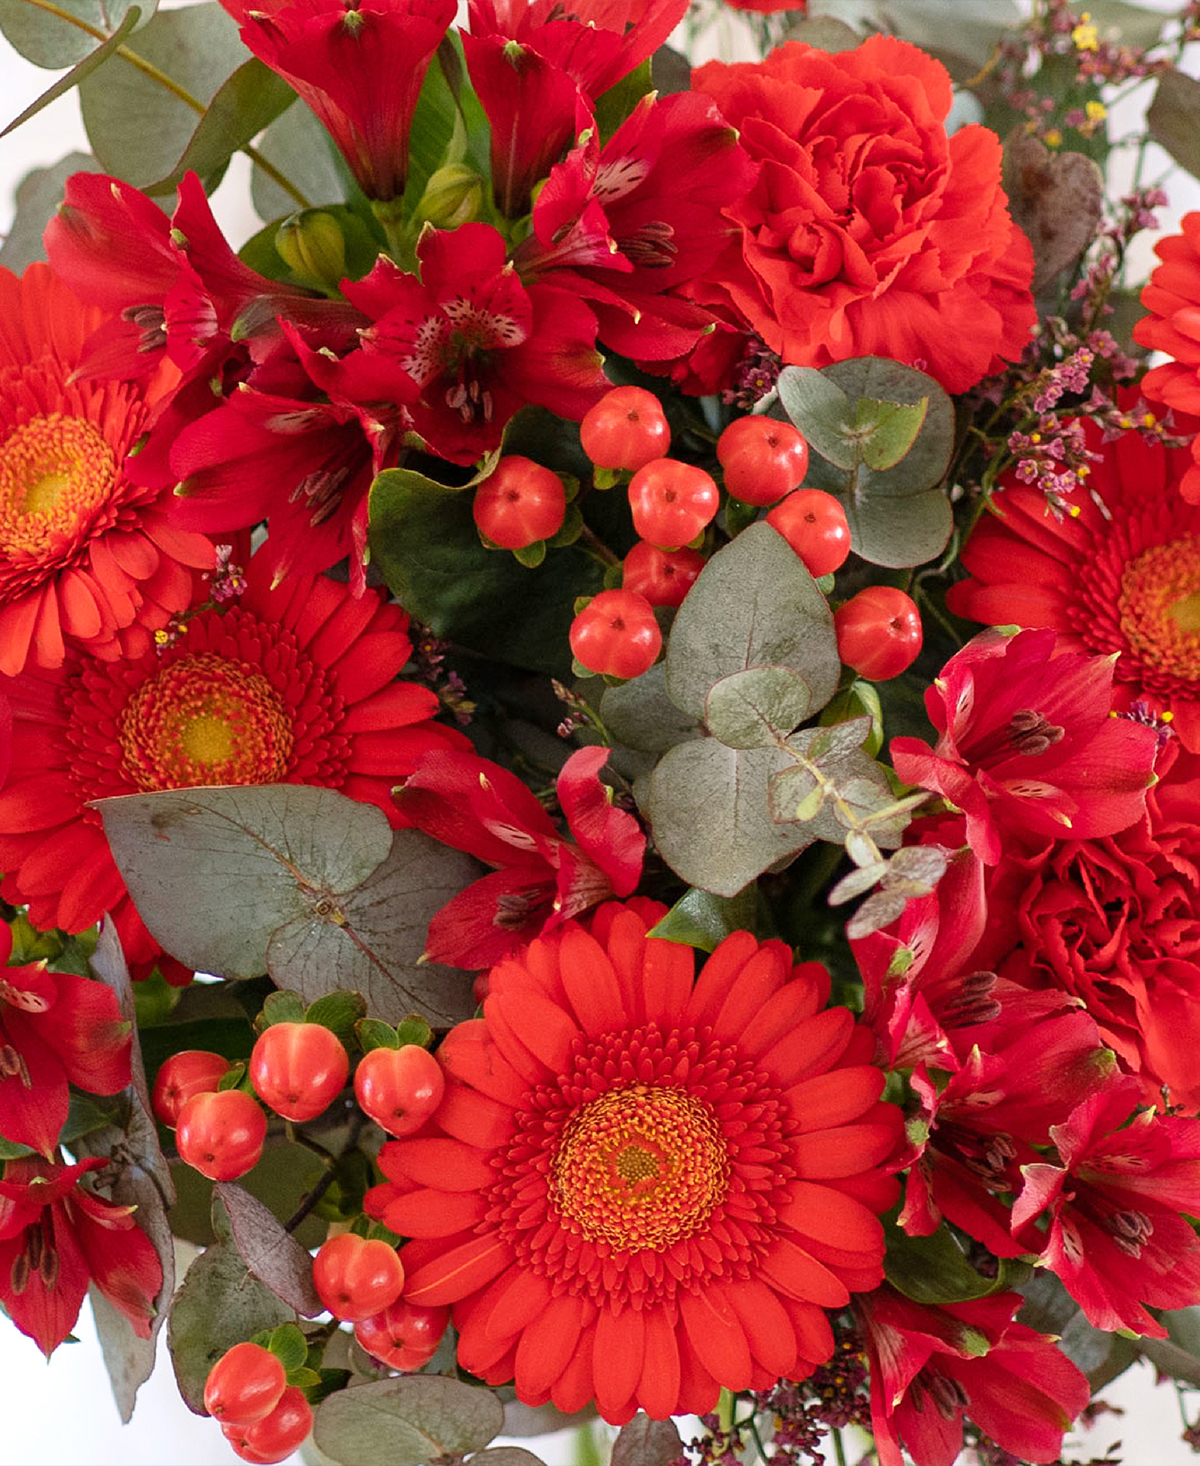 Bouquet del Fiorista - Rosso